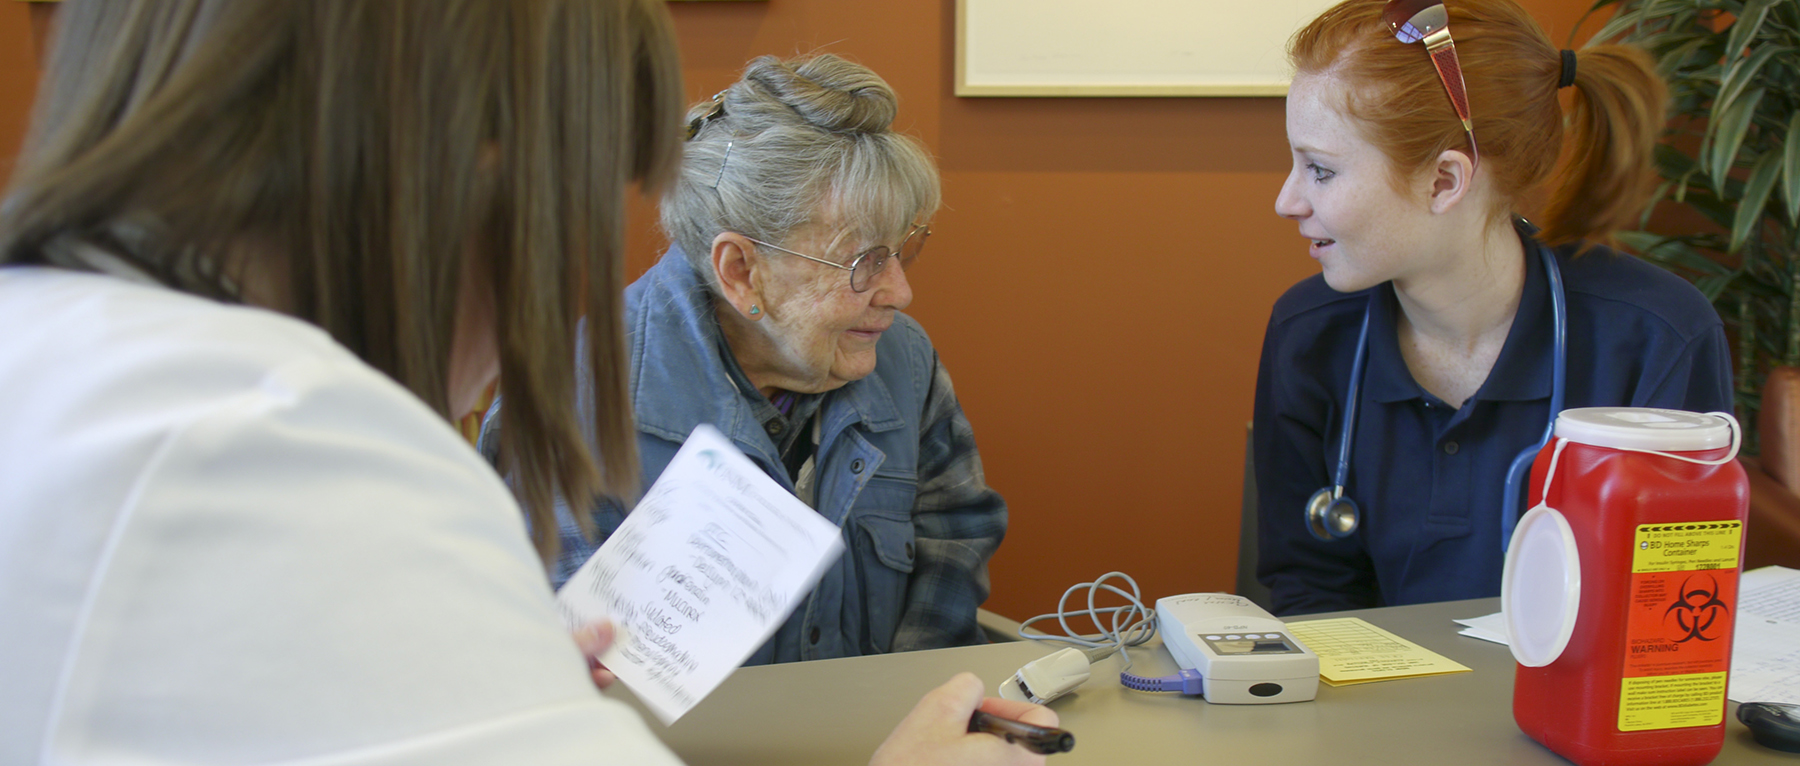 Uma mulher idosa conversando com enfermeiras